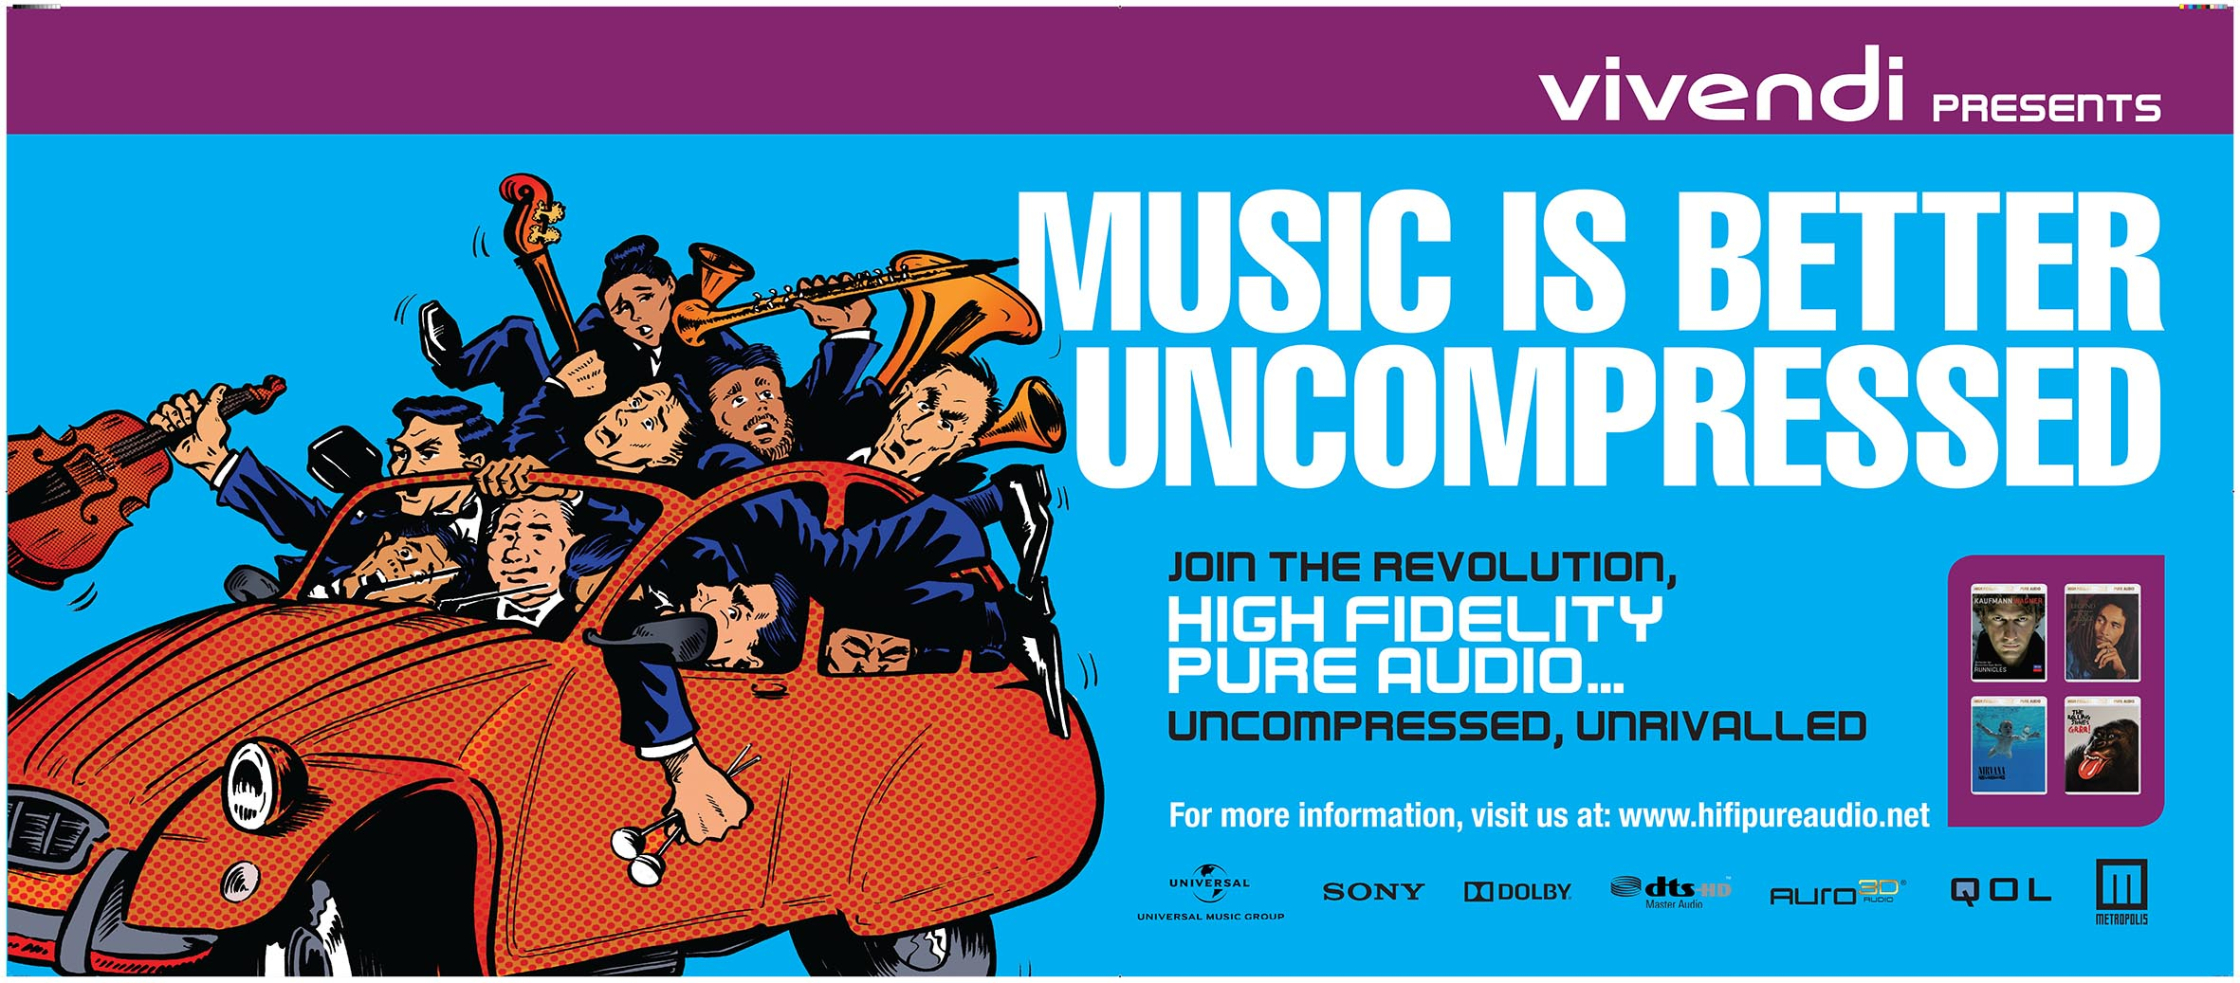 Music Is Better Uncompressed Vivendi UMusic